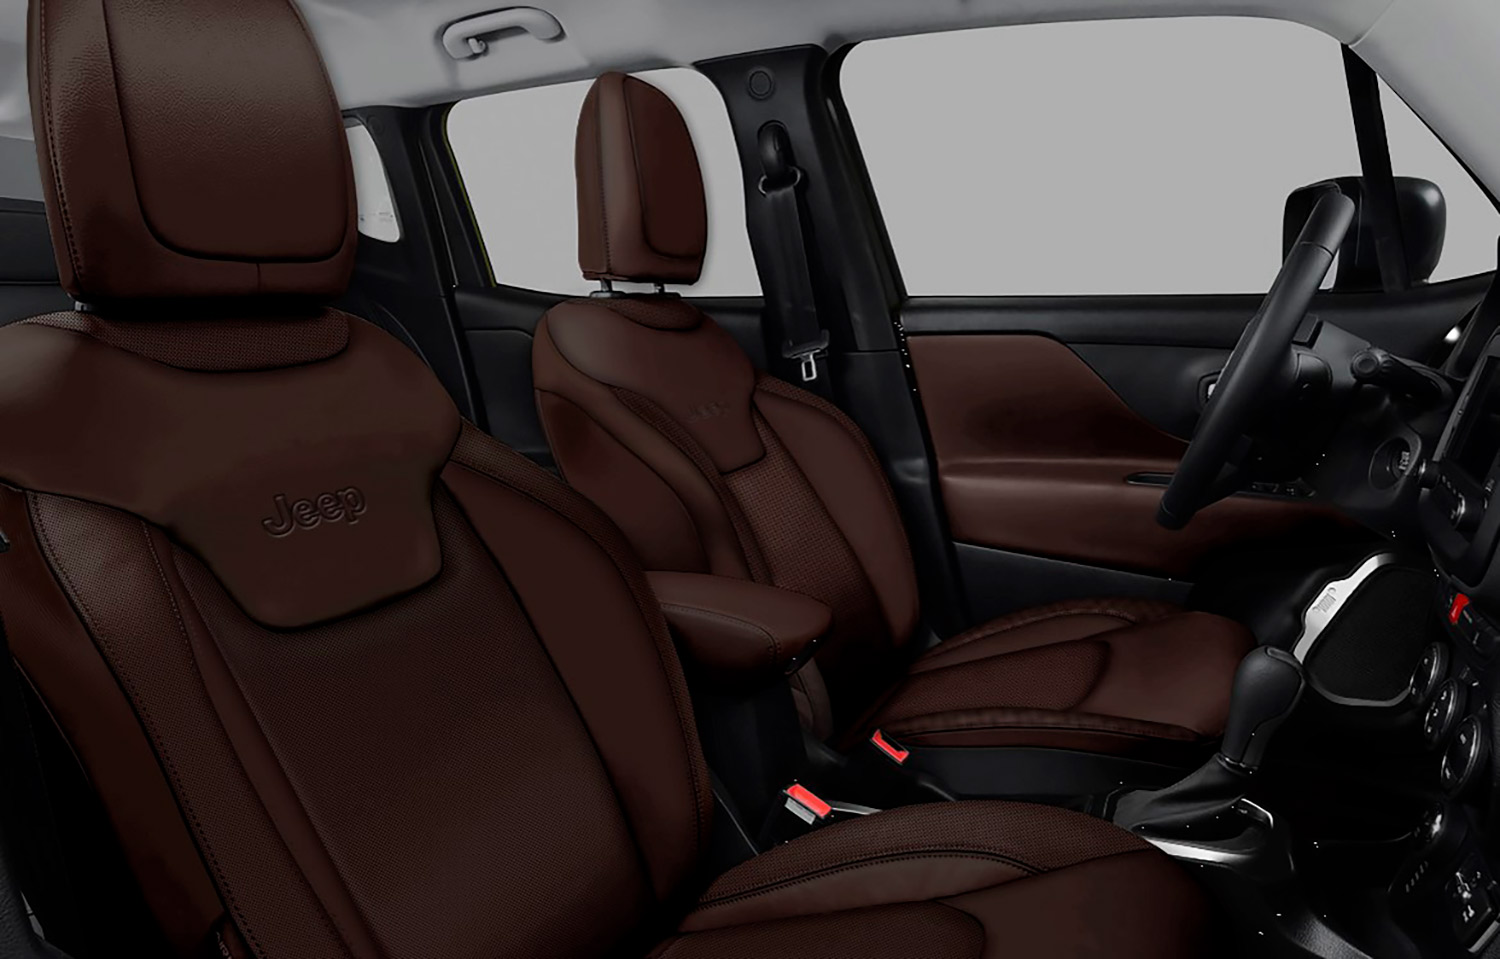 Jeep Renegade Bronze Edition 2022 en México, asientos en piel color bronce